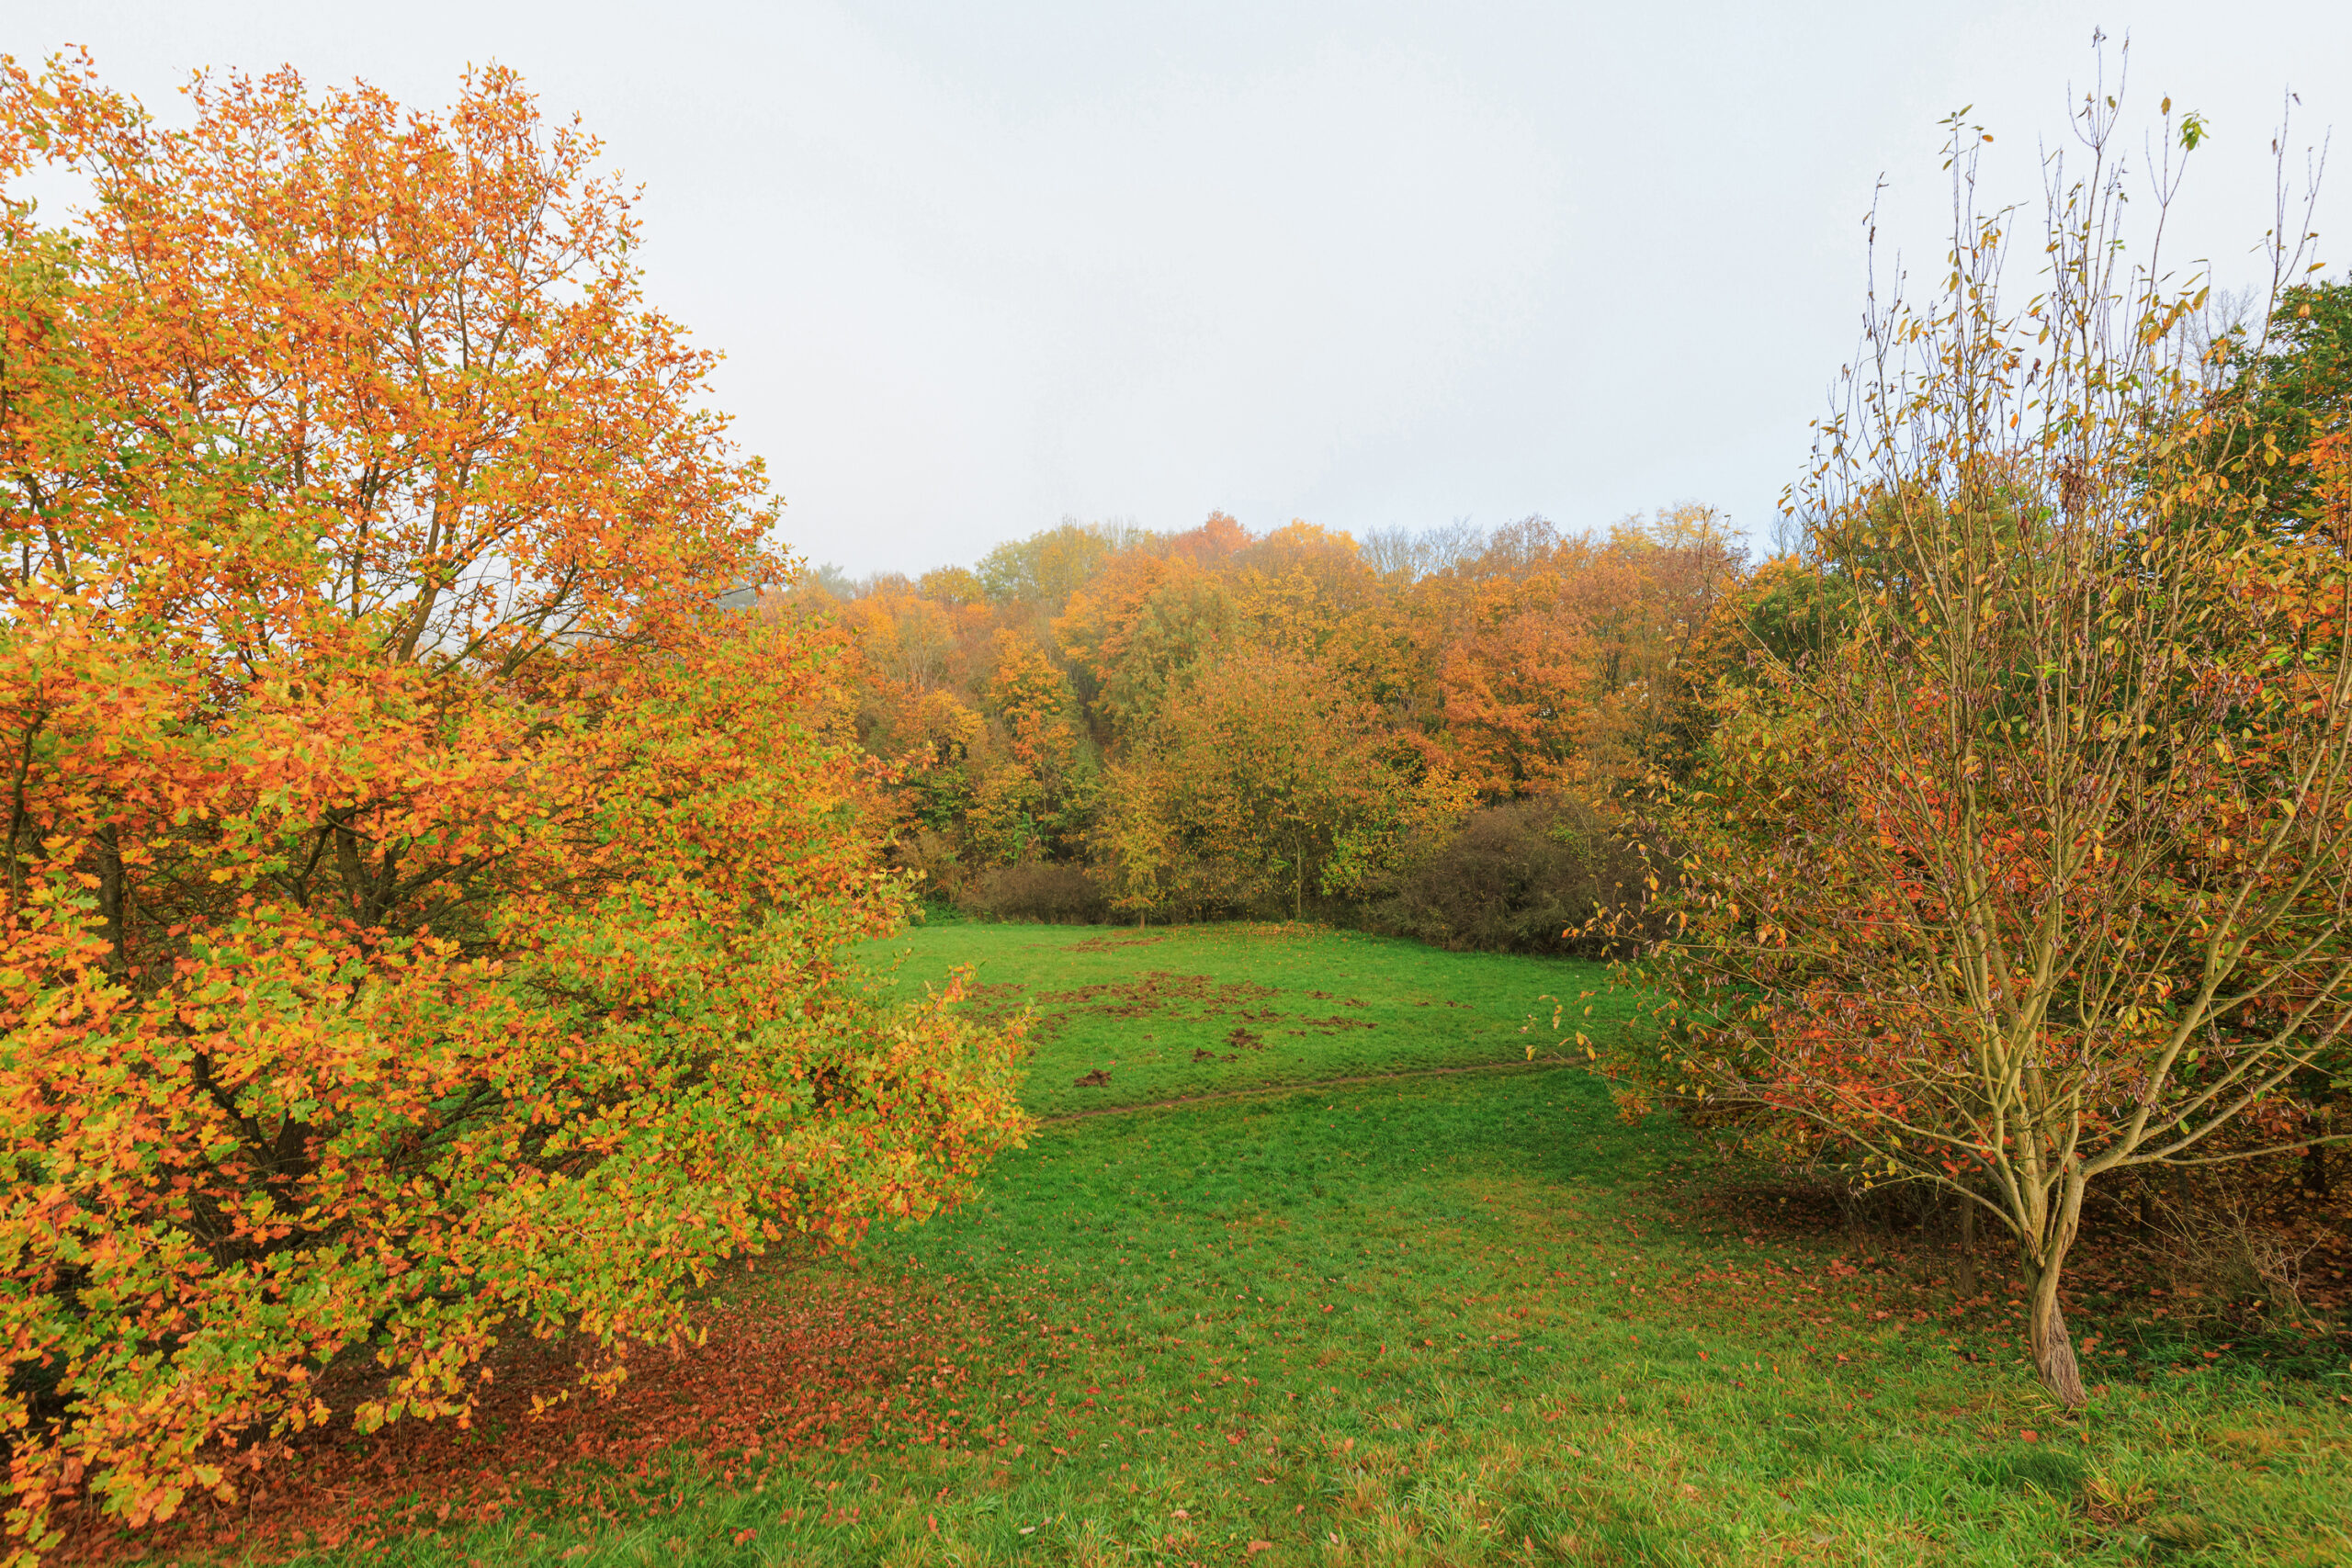 <h1>Hradiště – udržovaná část parku</h1><br />
Fotografie je pořízena z vyvýšené části Hradiště a zachycuje sekaný travní prostor parku, který je obklopen keři a vzrostlými stromy. Na podzimním snímku kontrastuje zelená plocha trávníku s oranžovým zbarvením stromů.